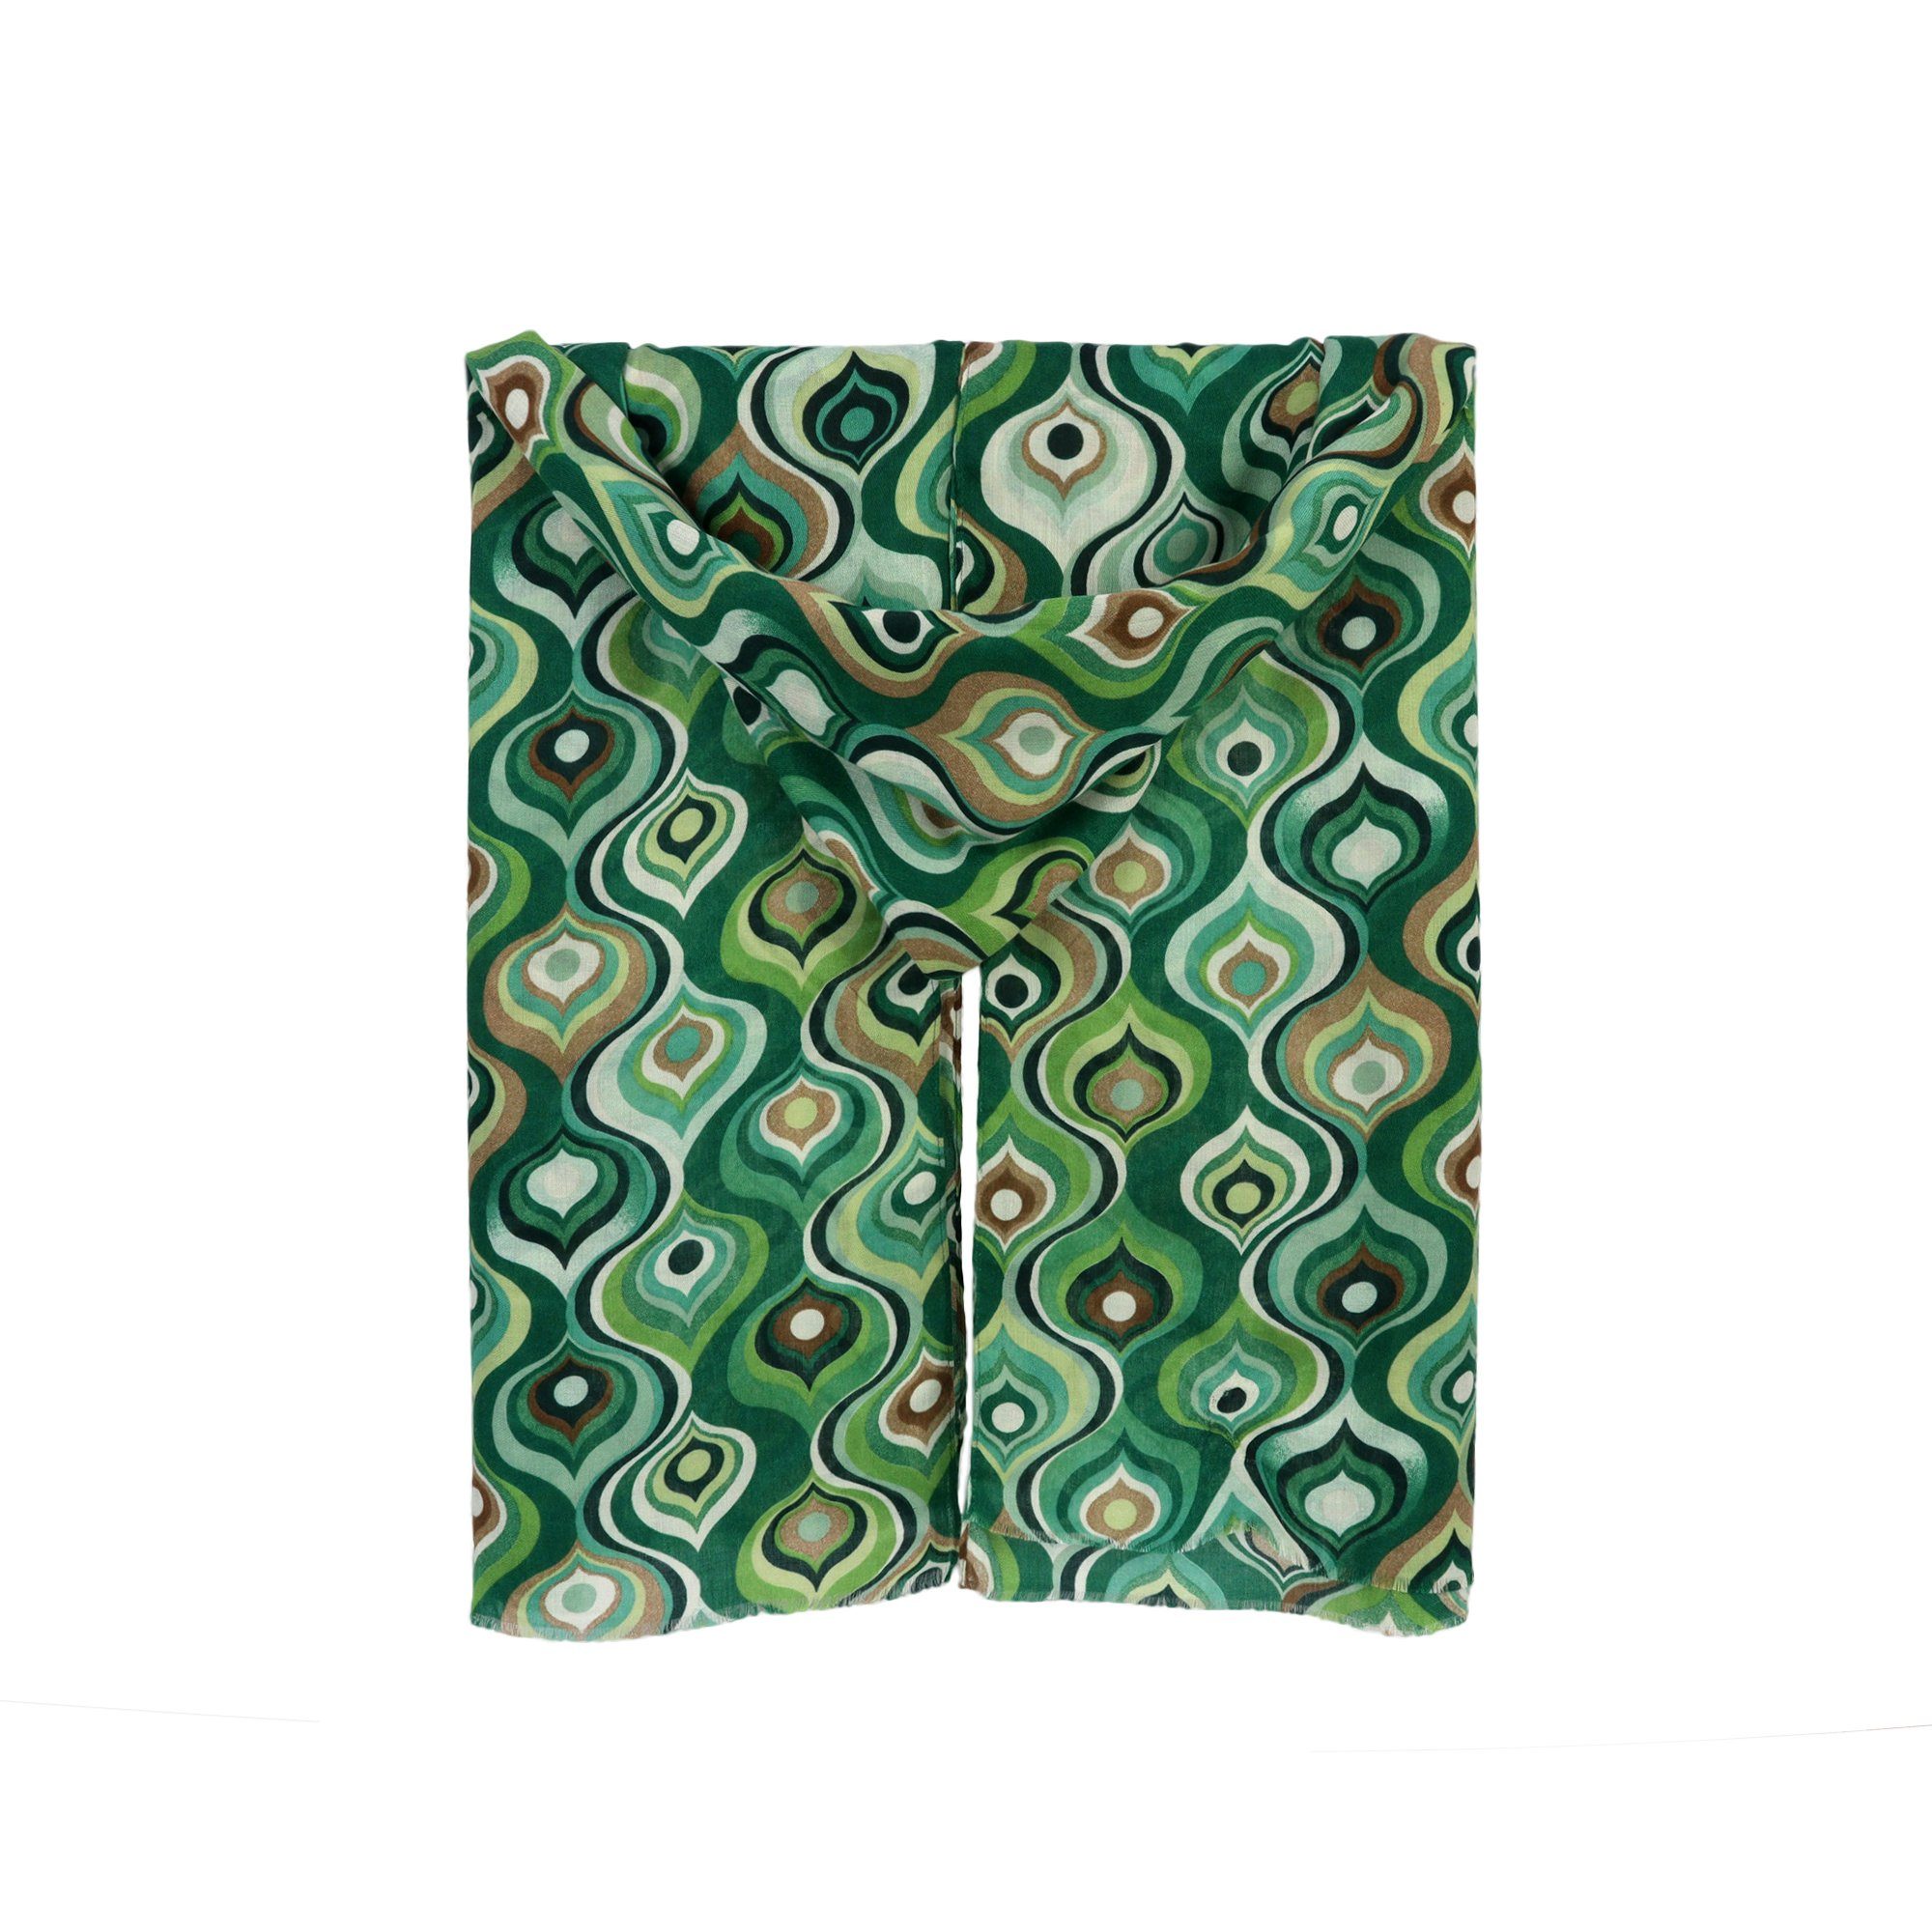 ZEBRO Modeschal grün Schal